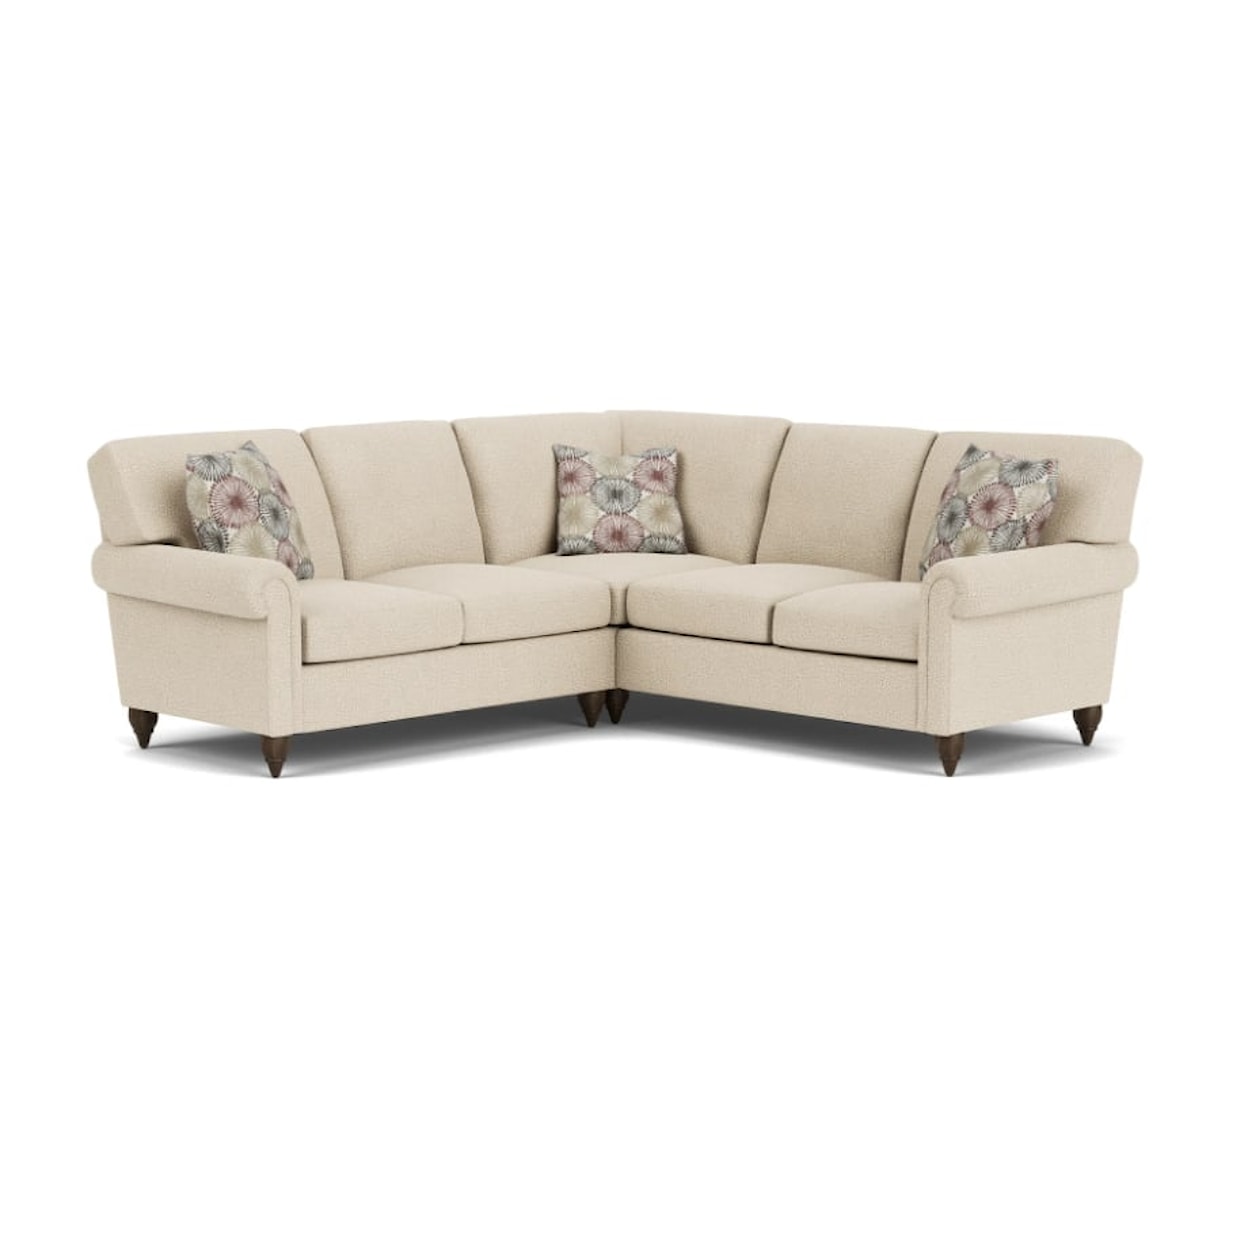 Flexsteel Moxy Sectional Sofa